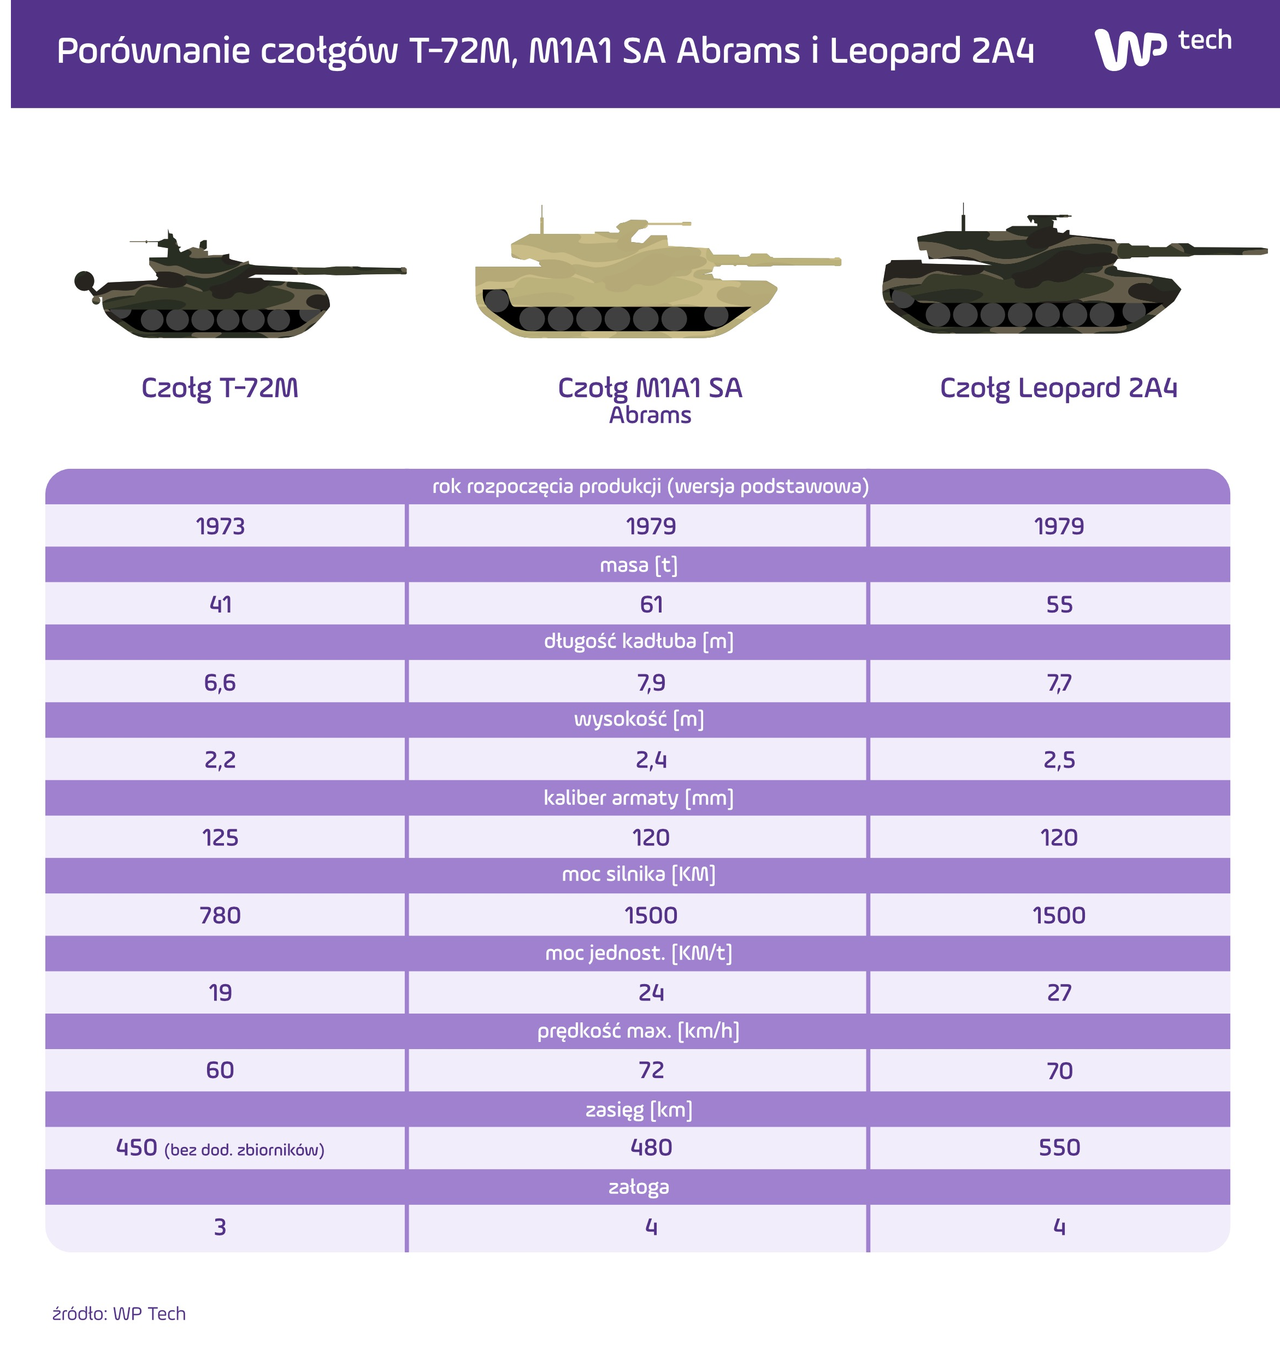 Porównanie czołgów w wersjach, które mogą trafić do Ukrainy